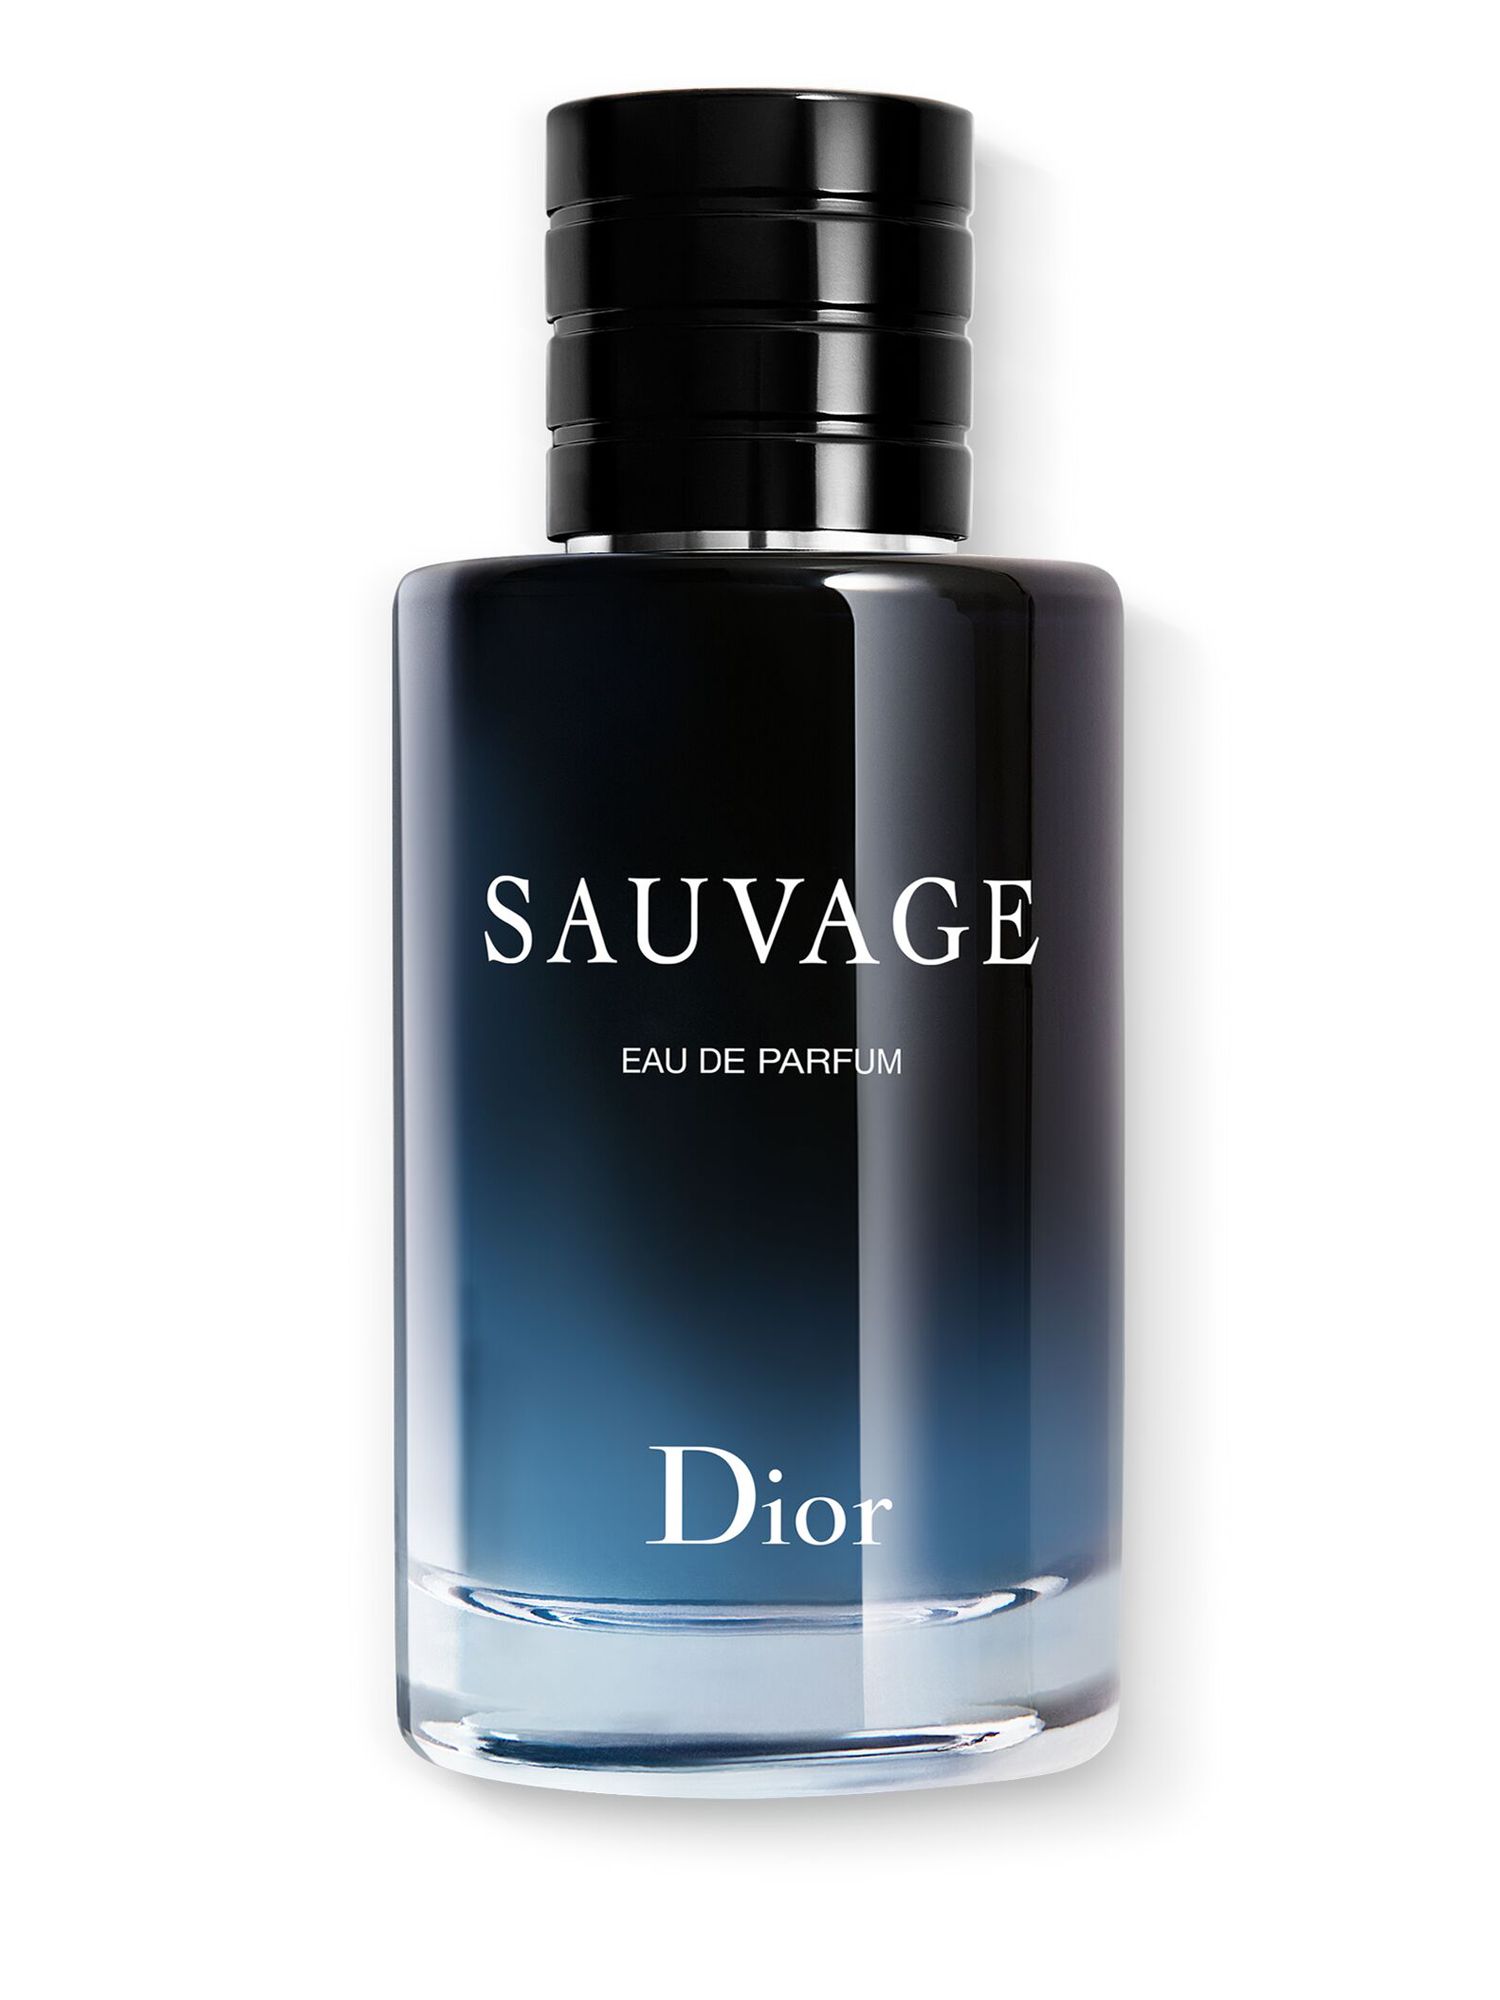 DIOR Sauvage Eau de Parfum, 100ml at John Lewis & Partners